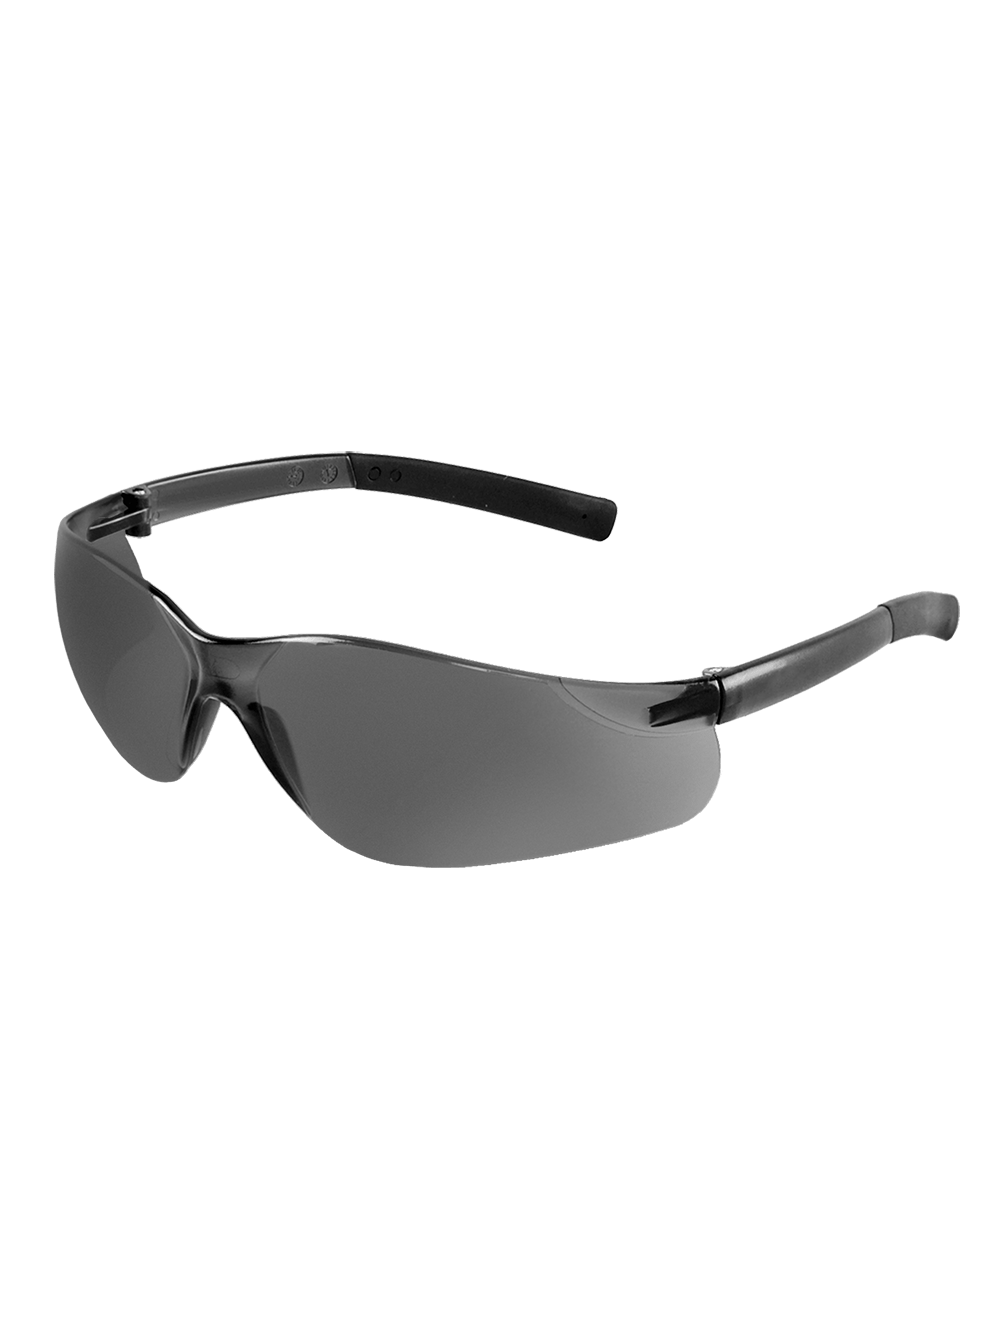 Pavon® Smoke Anti-Fog Lens, Frosted Black Frame Safety Glasses - BH543AF